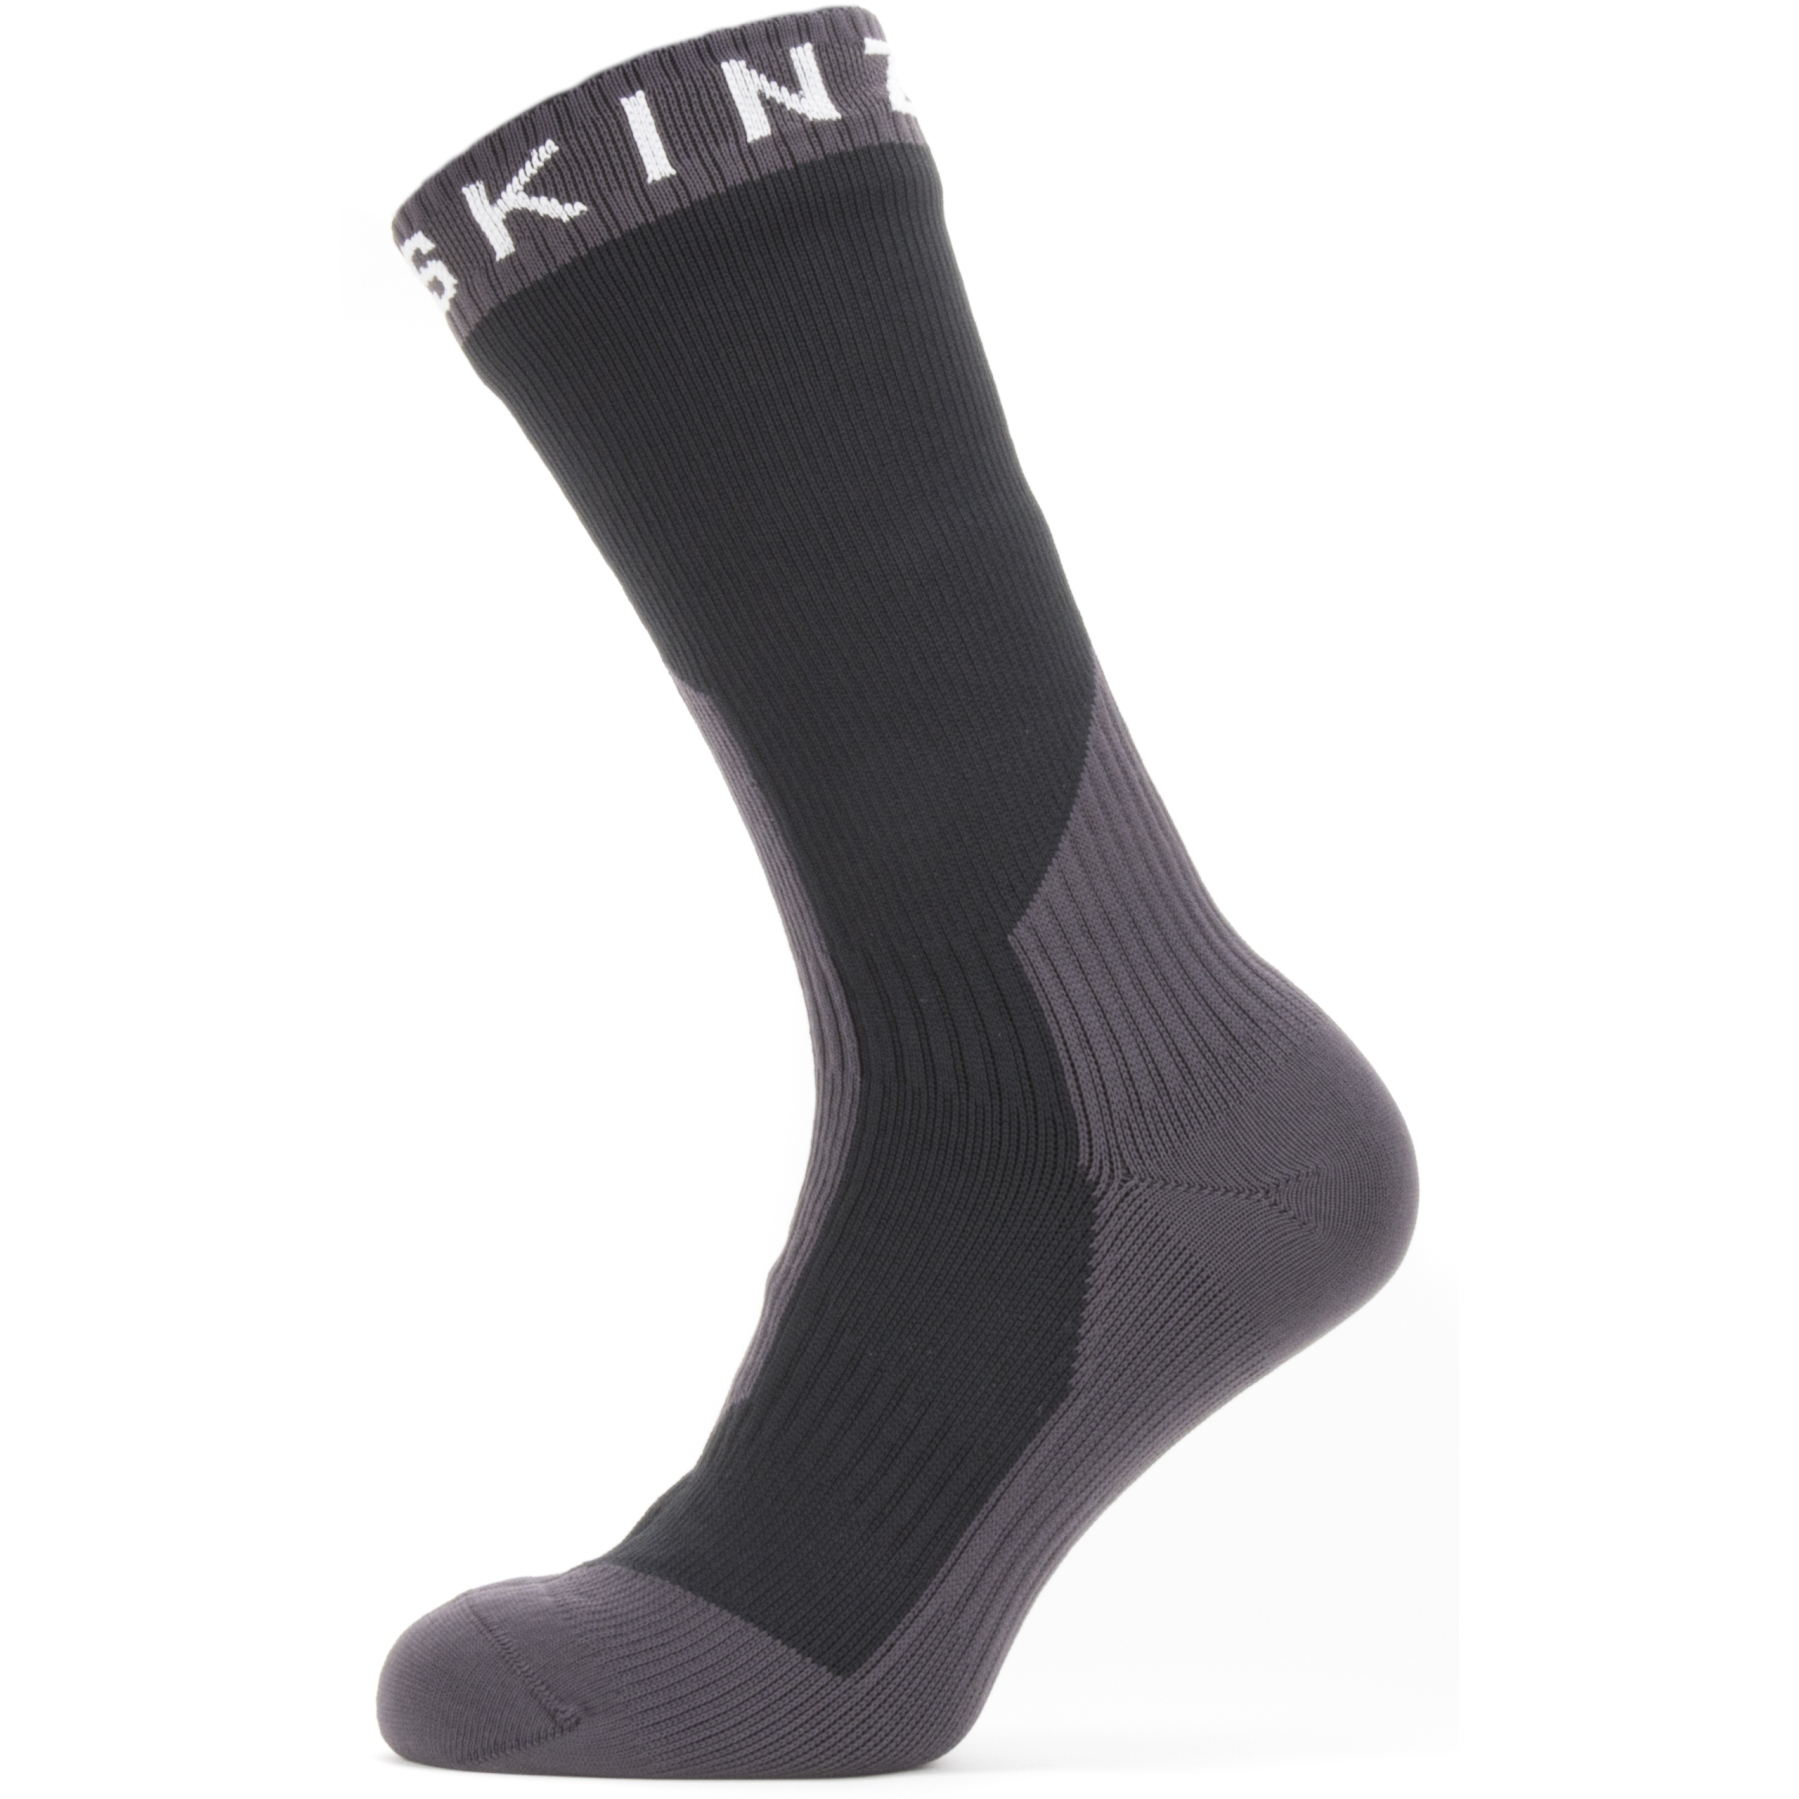 Productfoto van SealSkinz Stanfield Waterdichte Halflange Sokken Voor Extreem Koud Weer - Zwart/Grijs/Wit